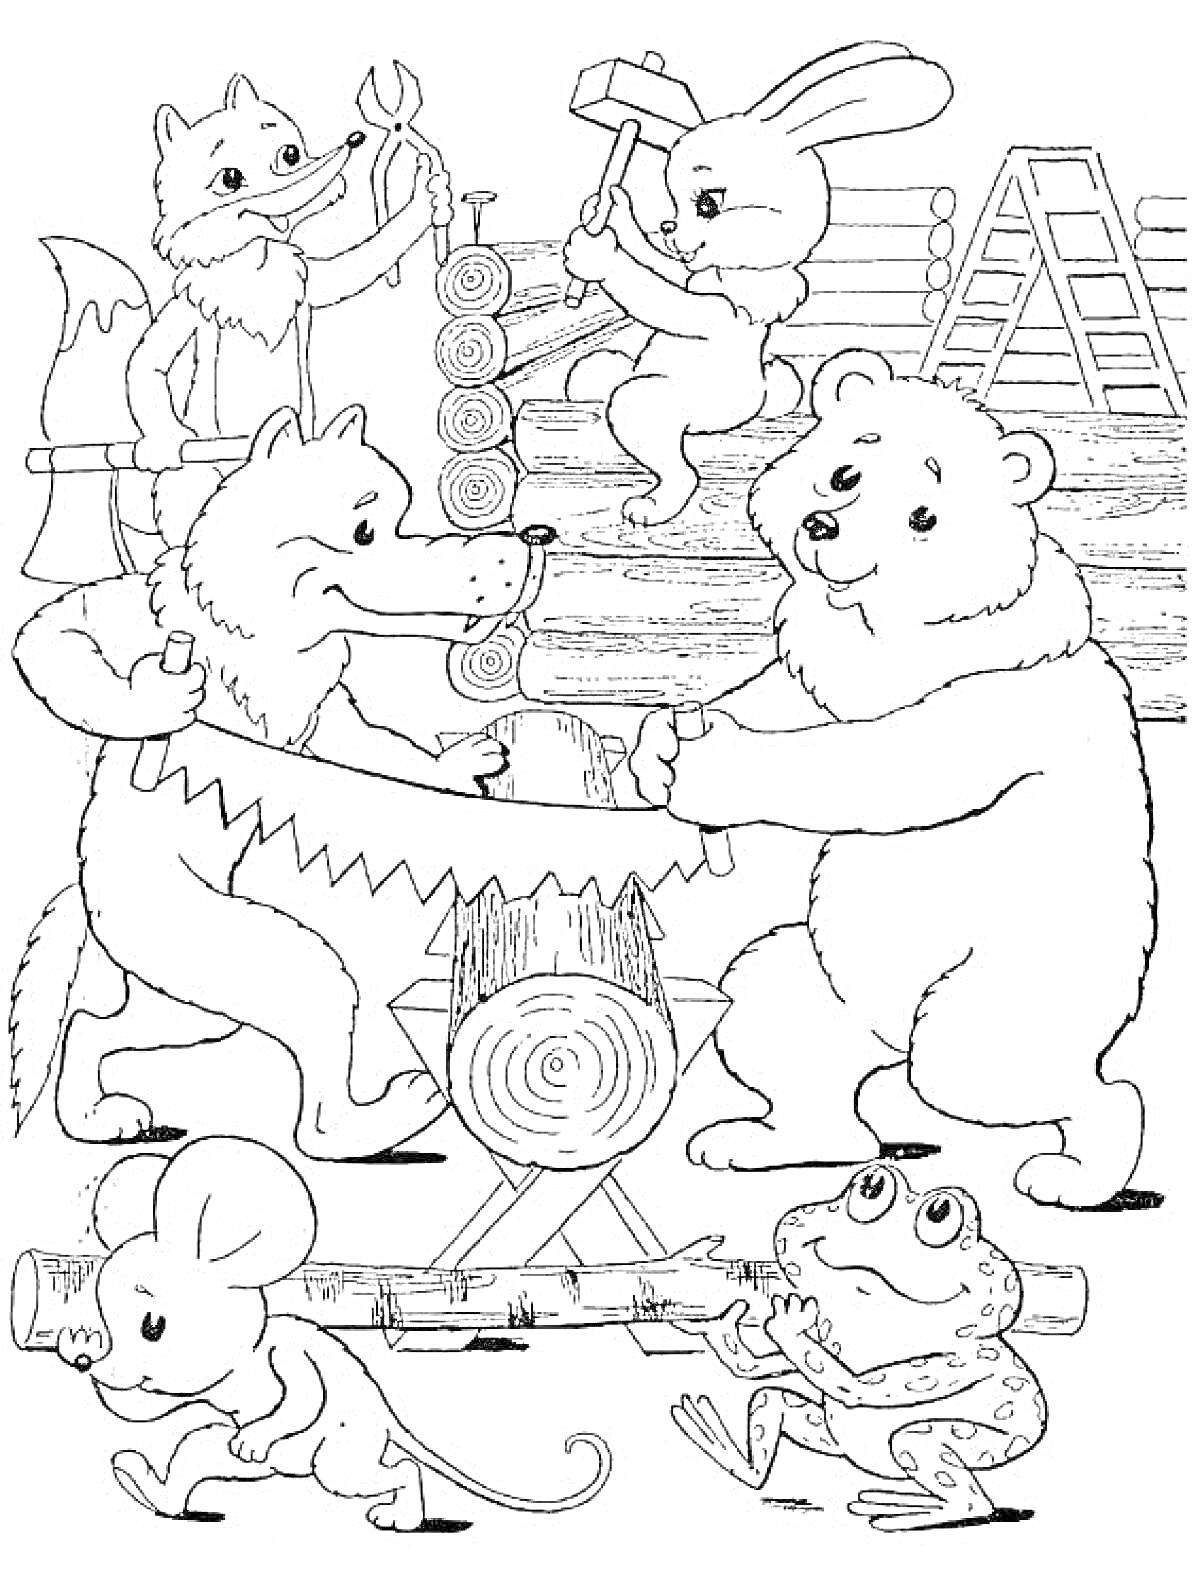 Раскраска Животные строят теремок: лиса с ключом, заяц с молотком, волк с топором, волк и медведь пилят бревно, мышка и лягушка наблюдают